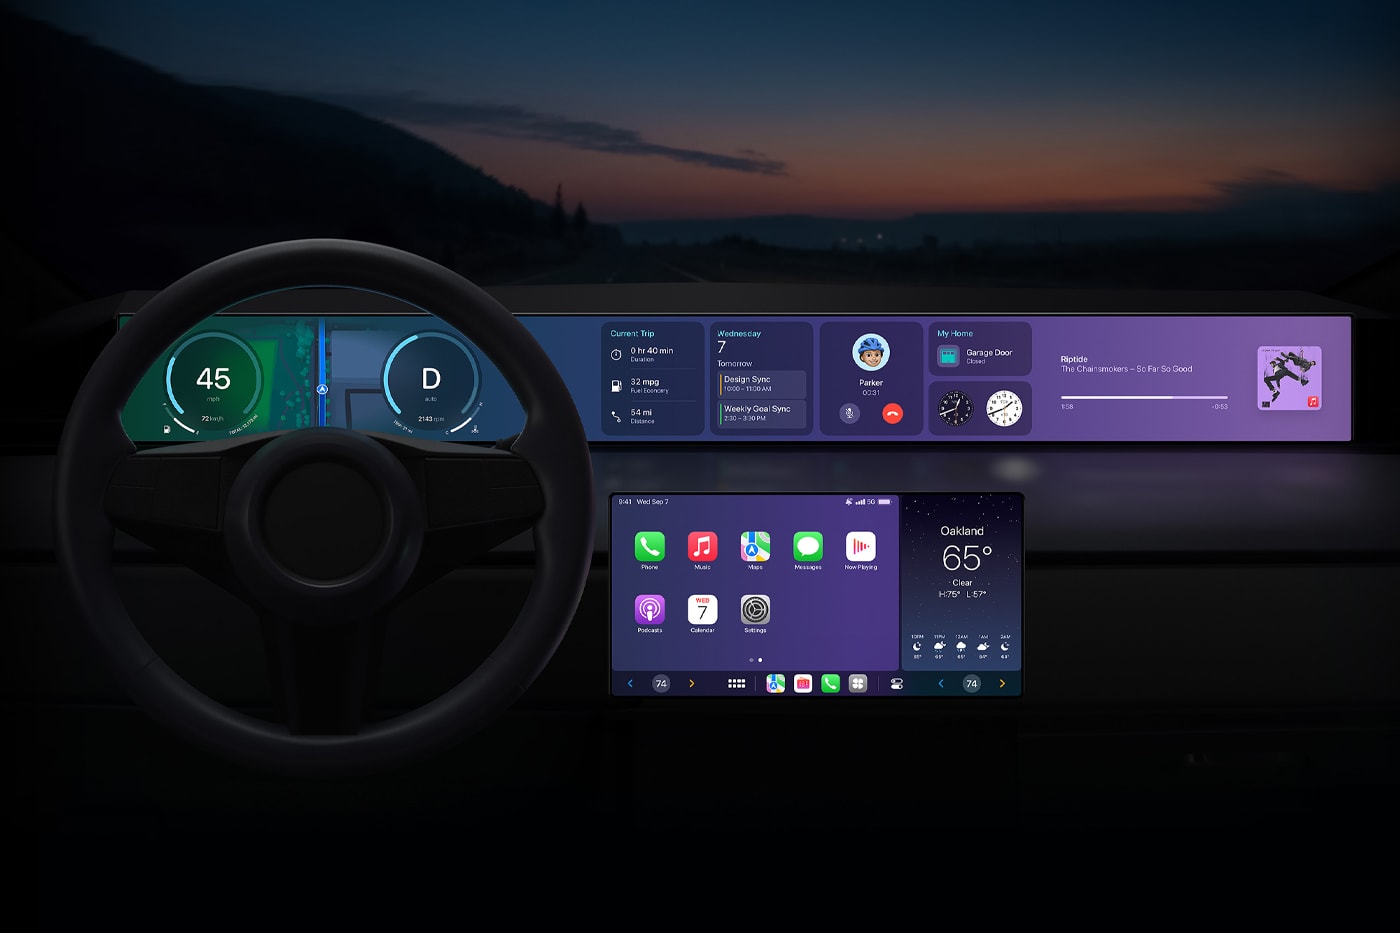 アップルが開発中のEV アップルカーの発売が約2年ほど遅れるとの噂 Apple Car Could Debut in 2028, but With Reduced Autonomy project titan decade old self driving robotic car technology